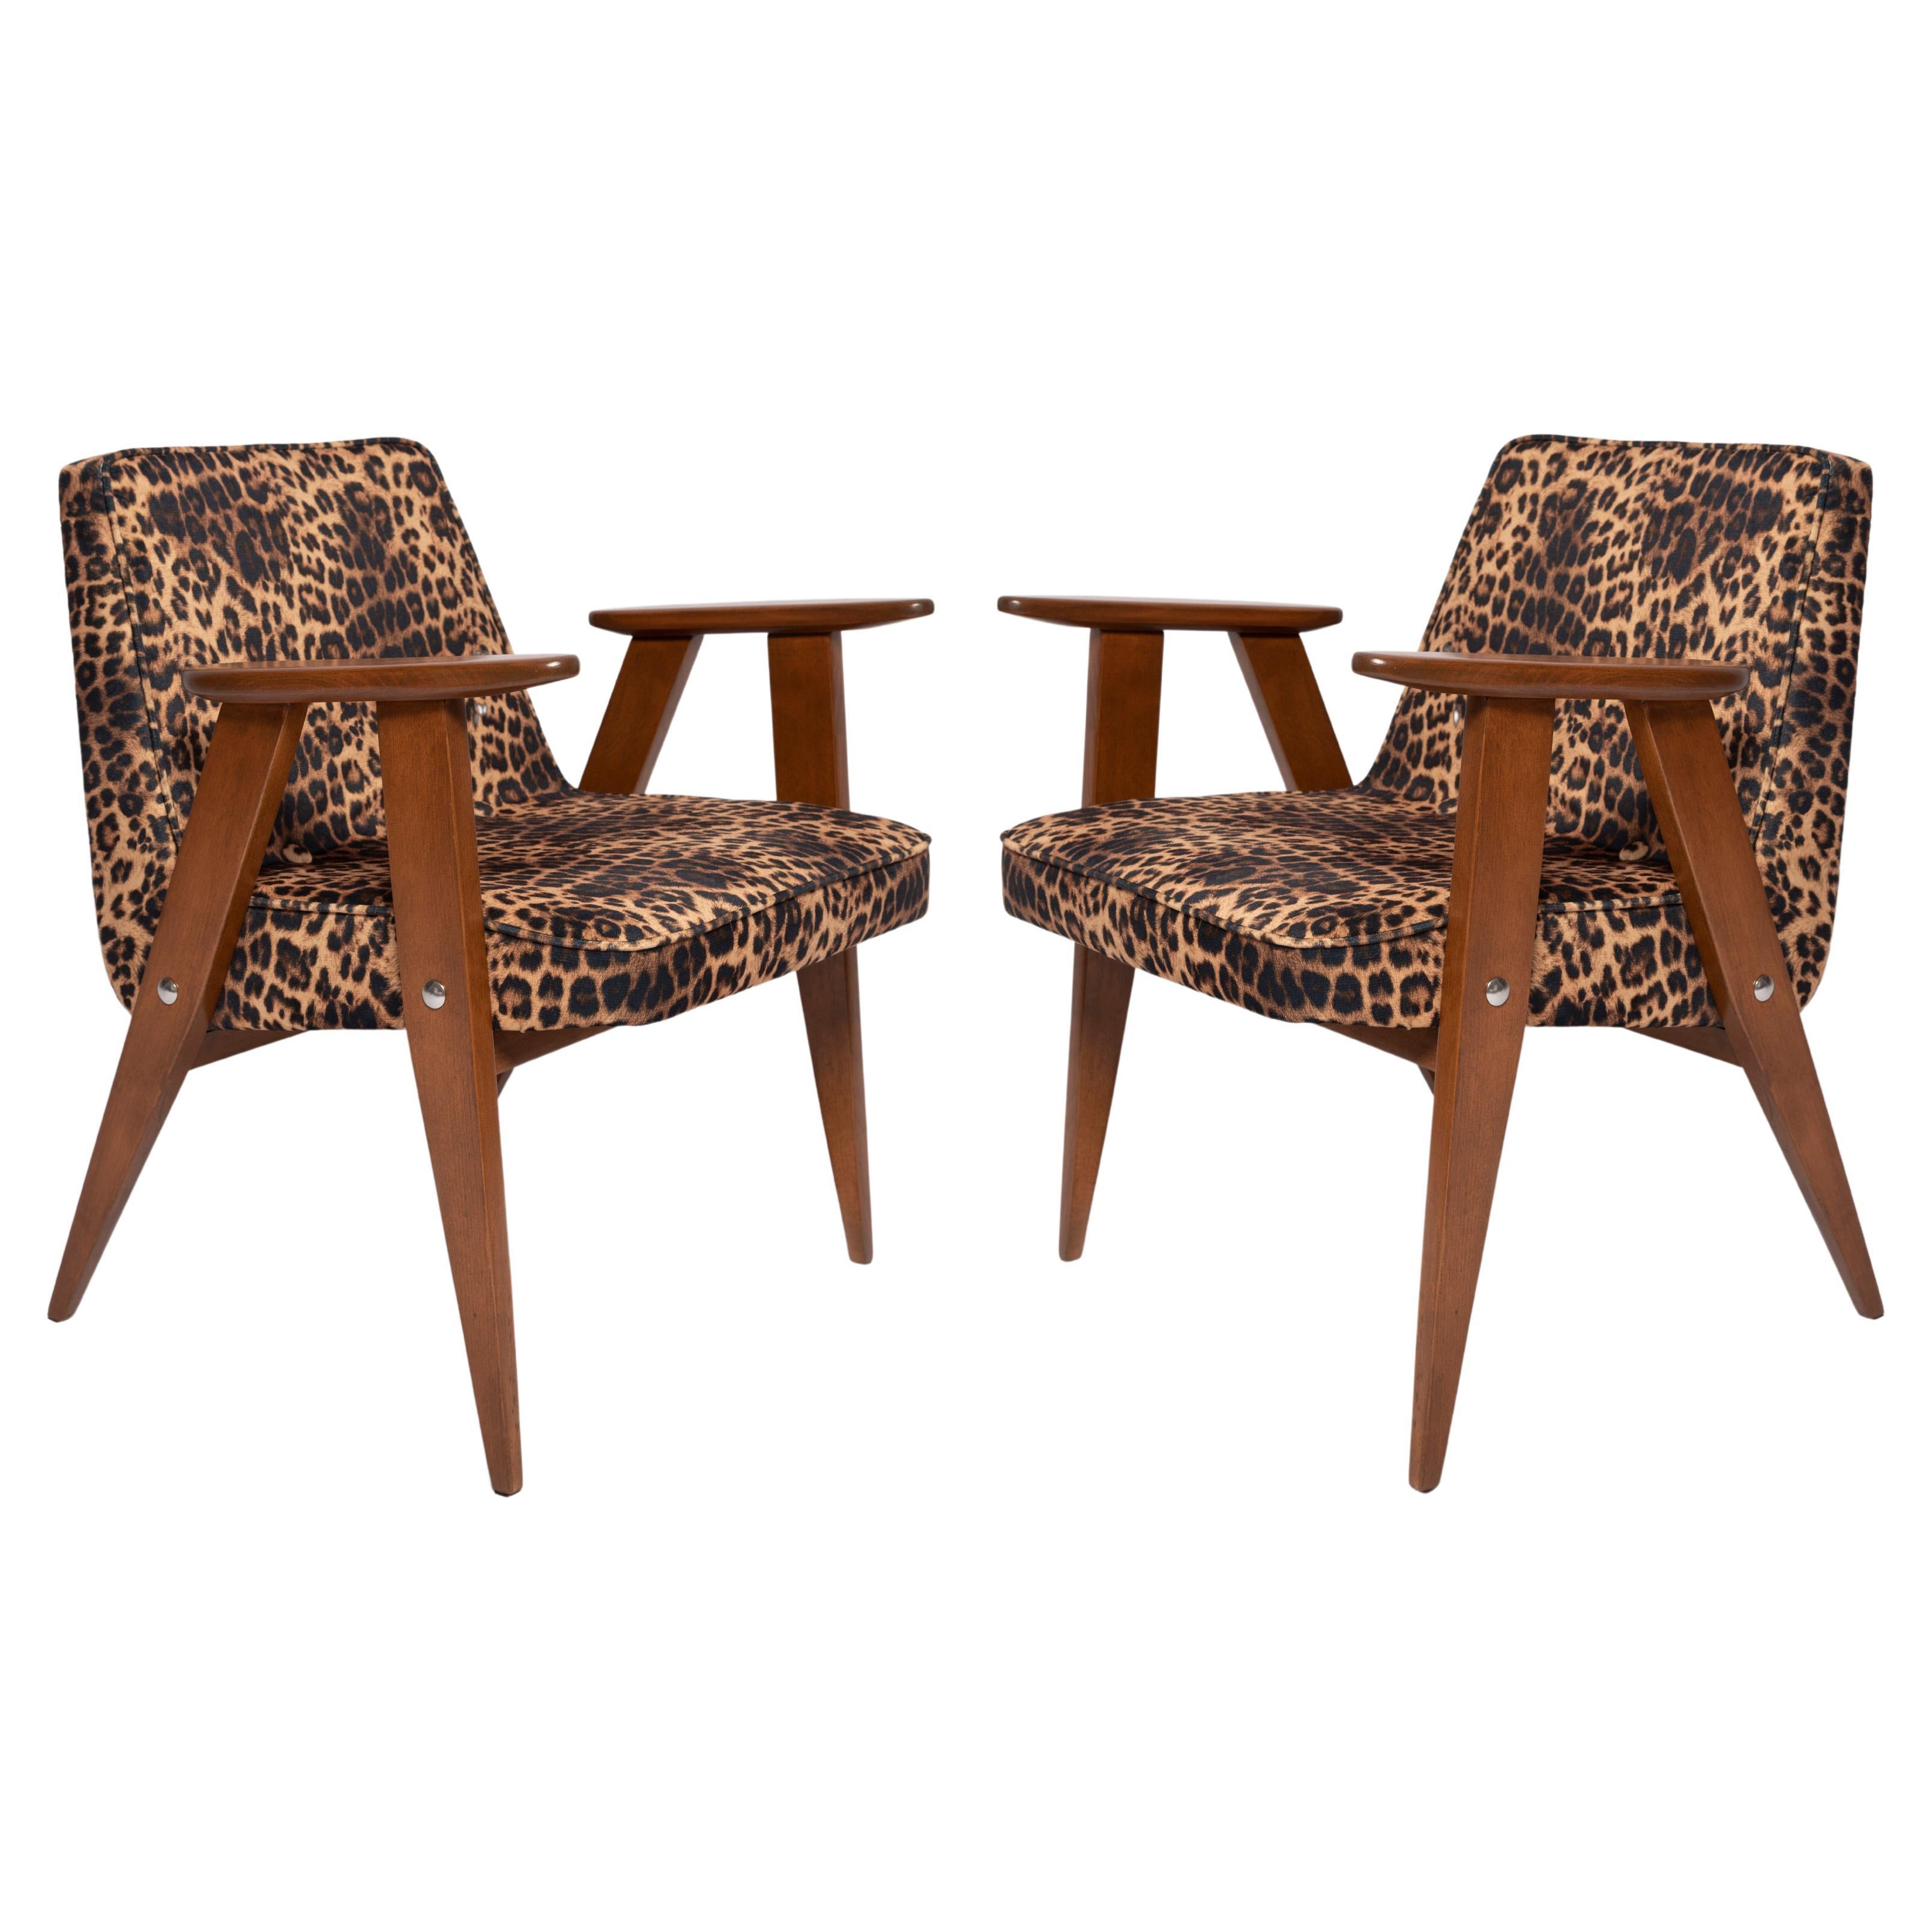 Zwei Sessel 366 aus Samt mit Leopardenmuster, Jozef Chierowski, 1960er Jahre